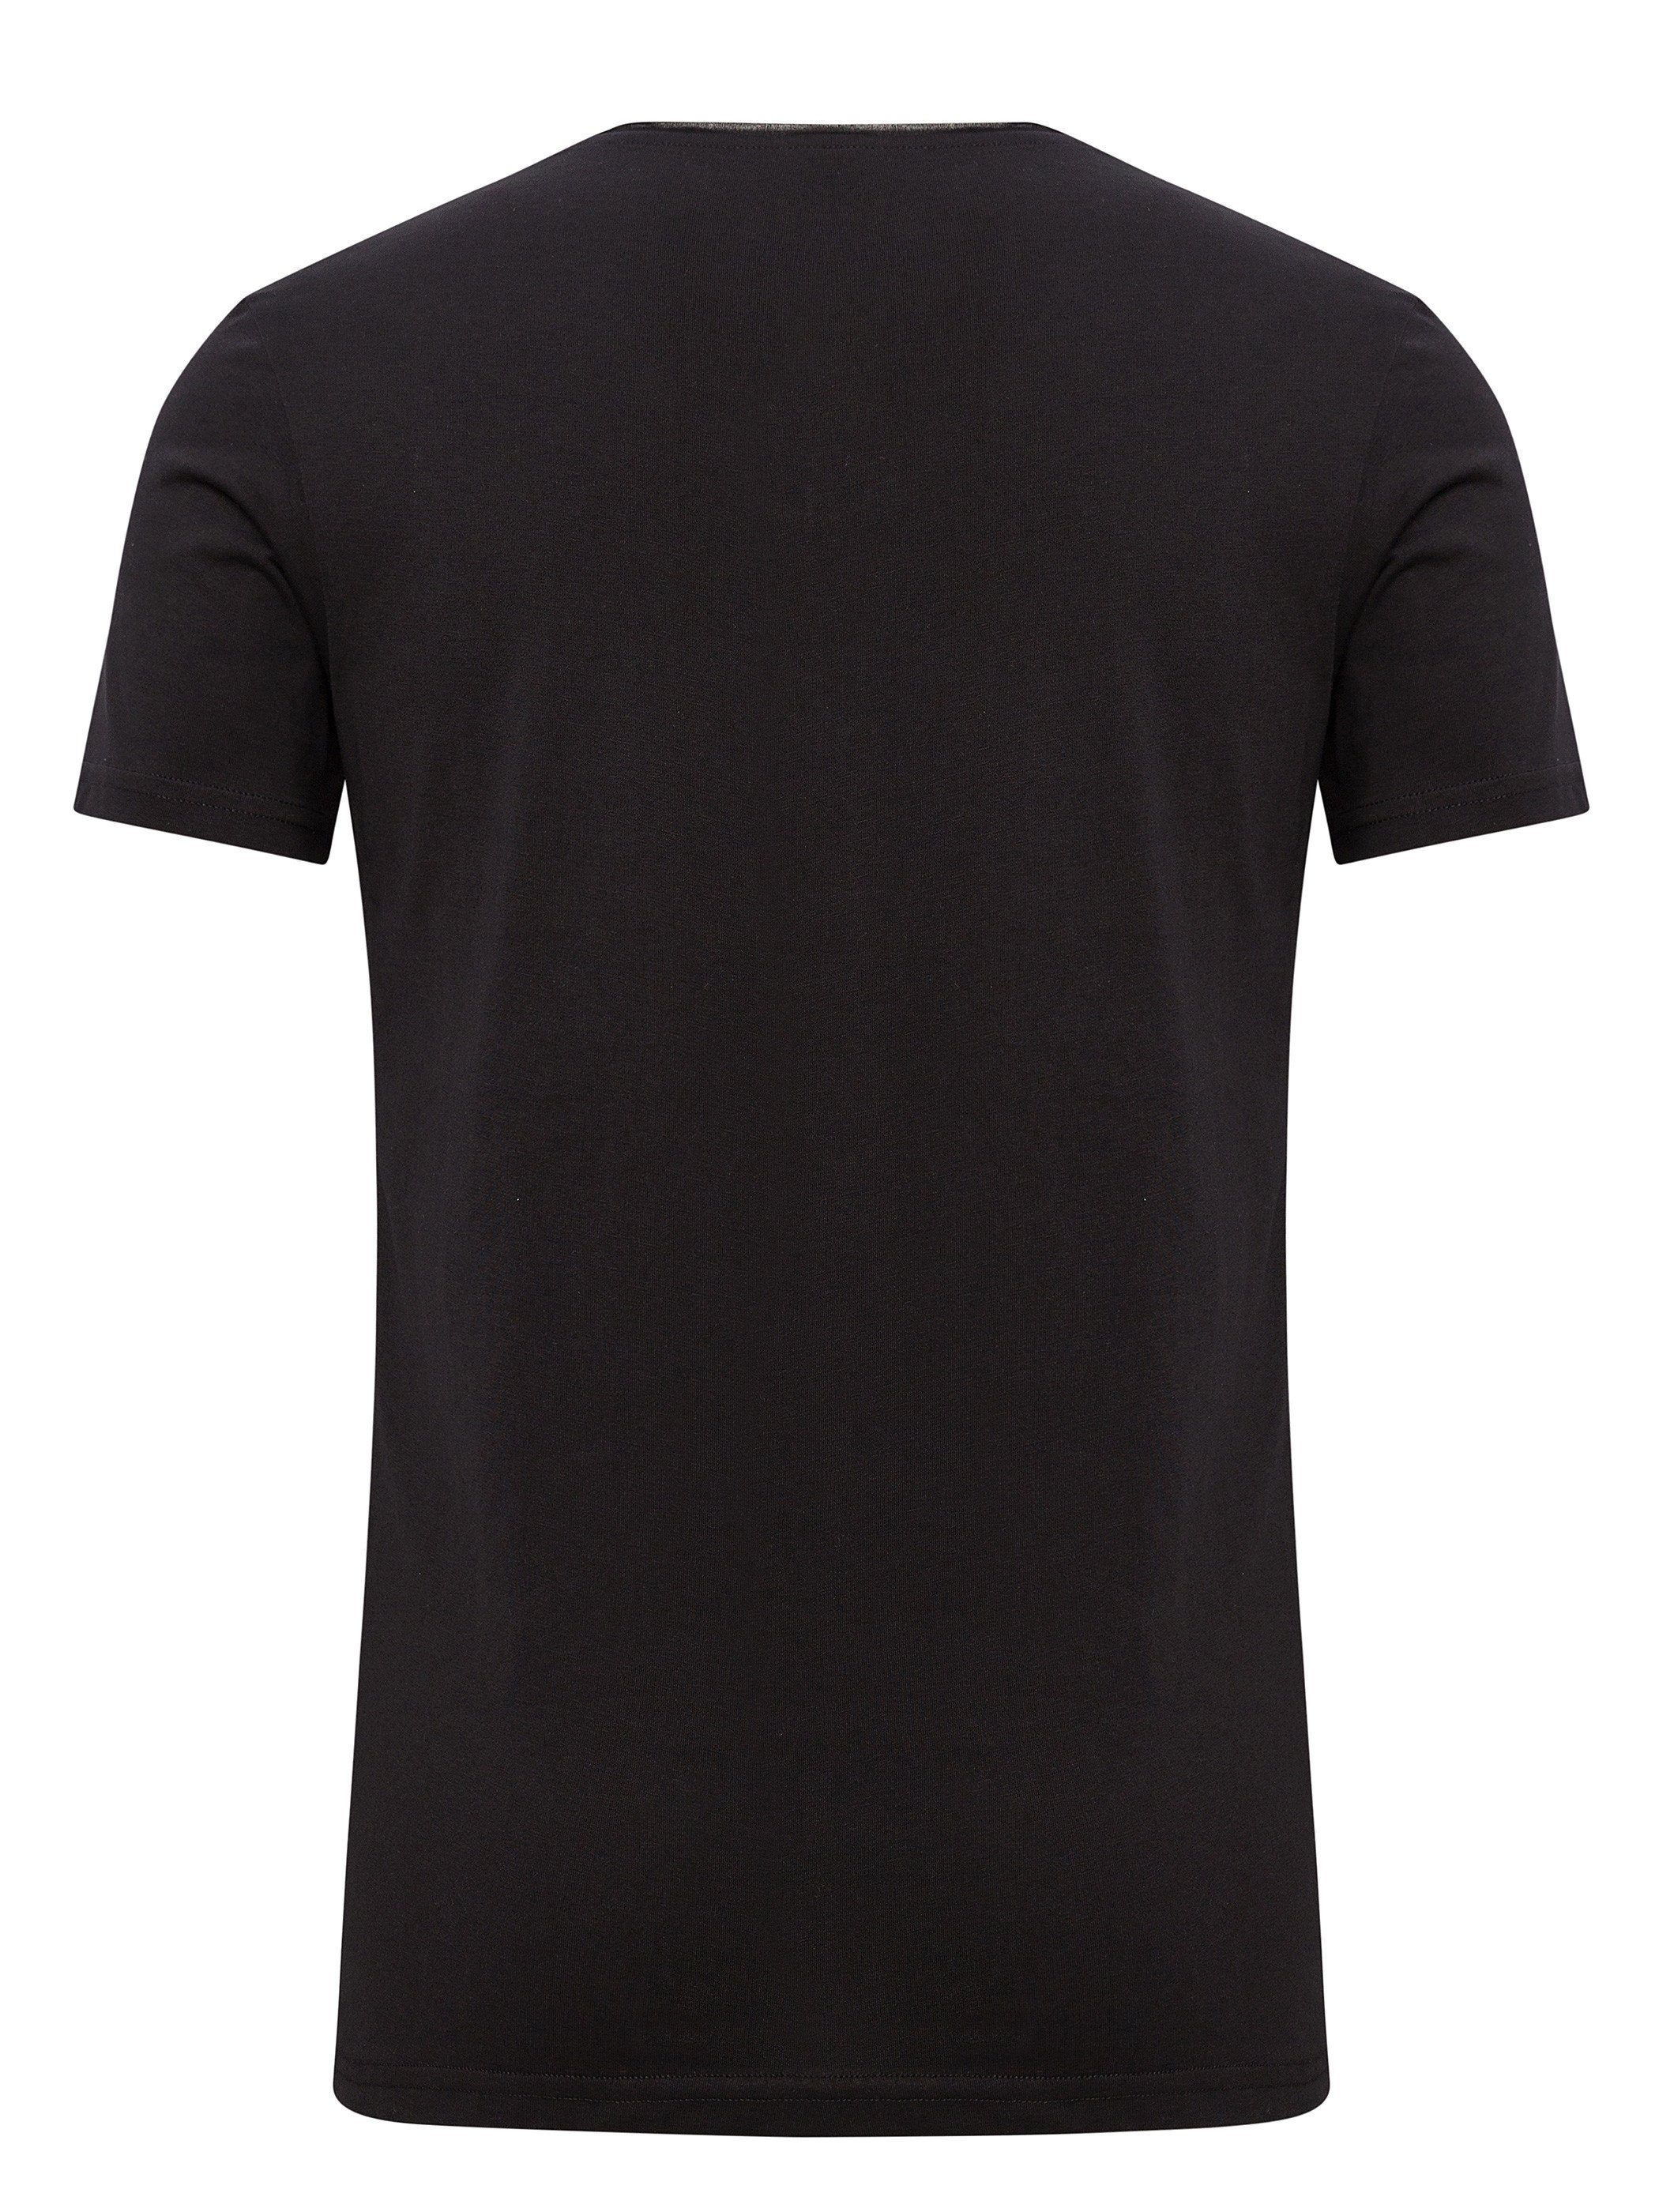 164007) Basic V-Neck Nasus V-Shirt WOTEGA Tee Schwarz (black